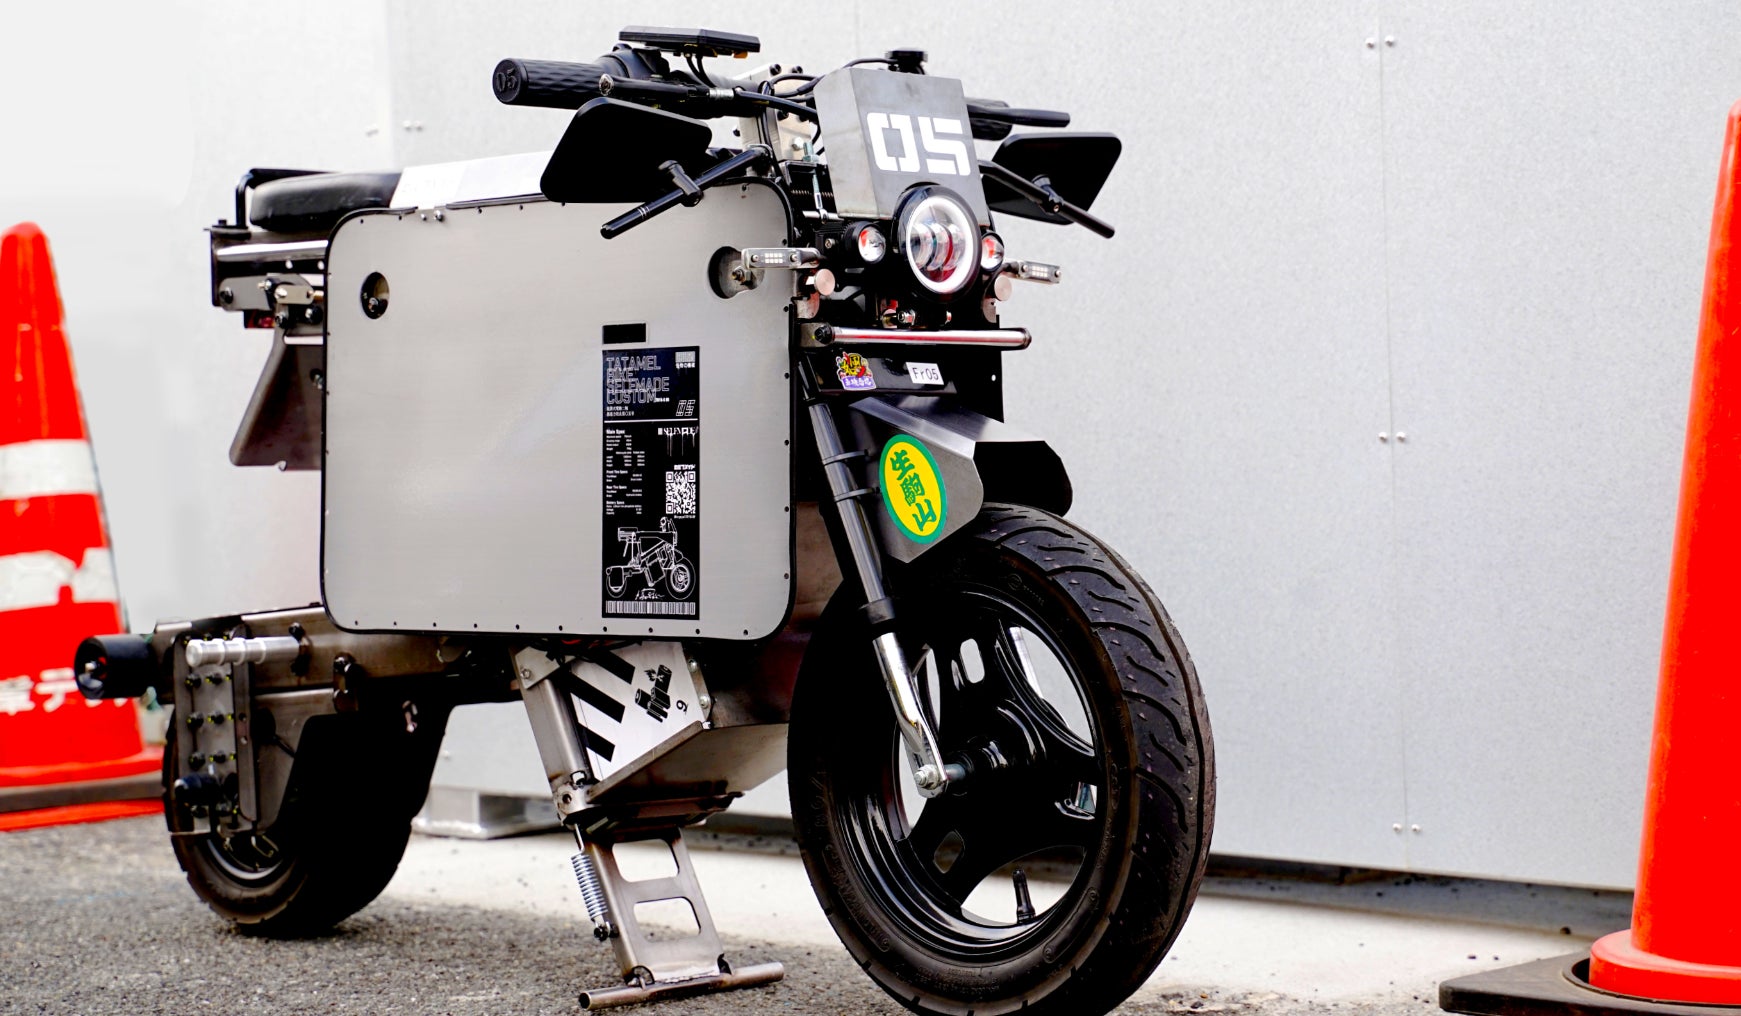 『TOKYO AUTO SALON 2024』 に、ICOMA タタメルバイク カスタマイズVer.を出展いたします。